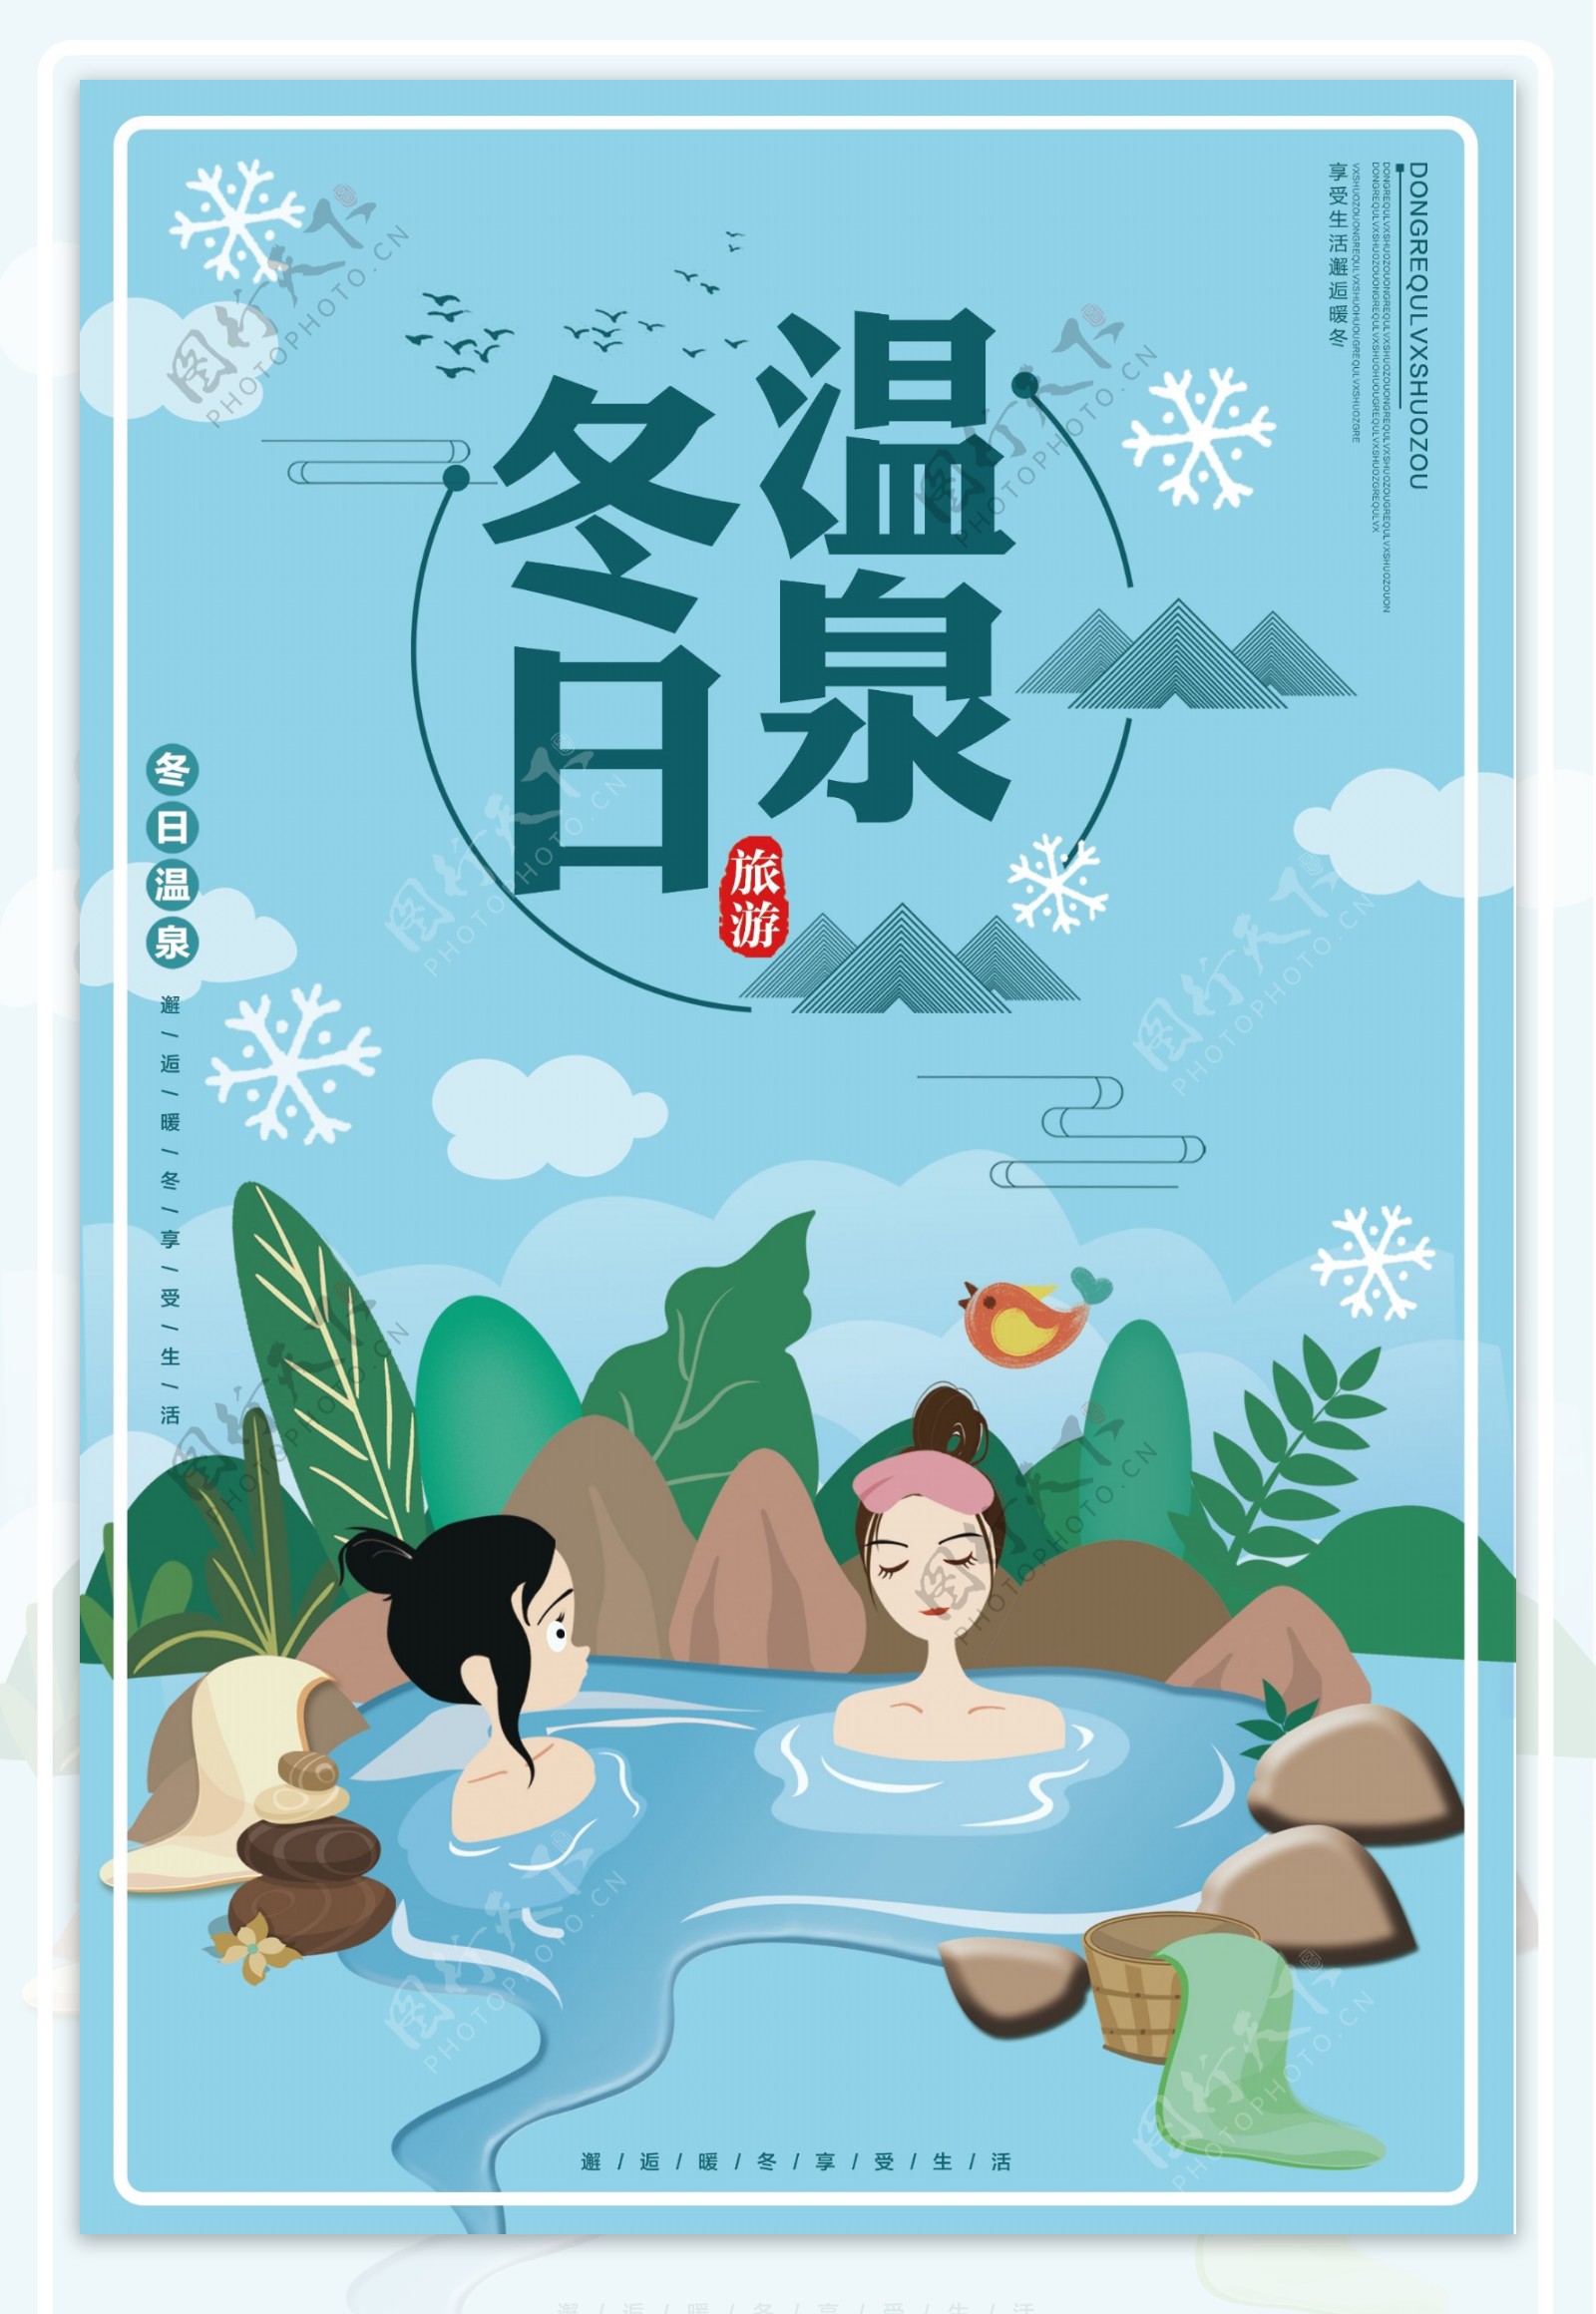 冬天温泉旅游设计海报